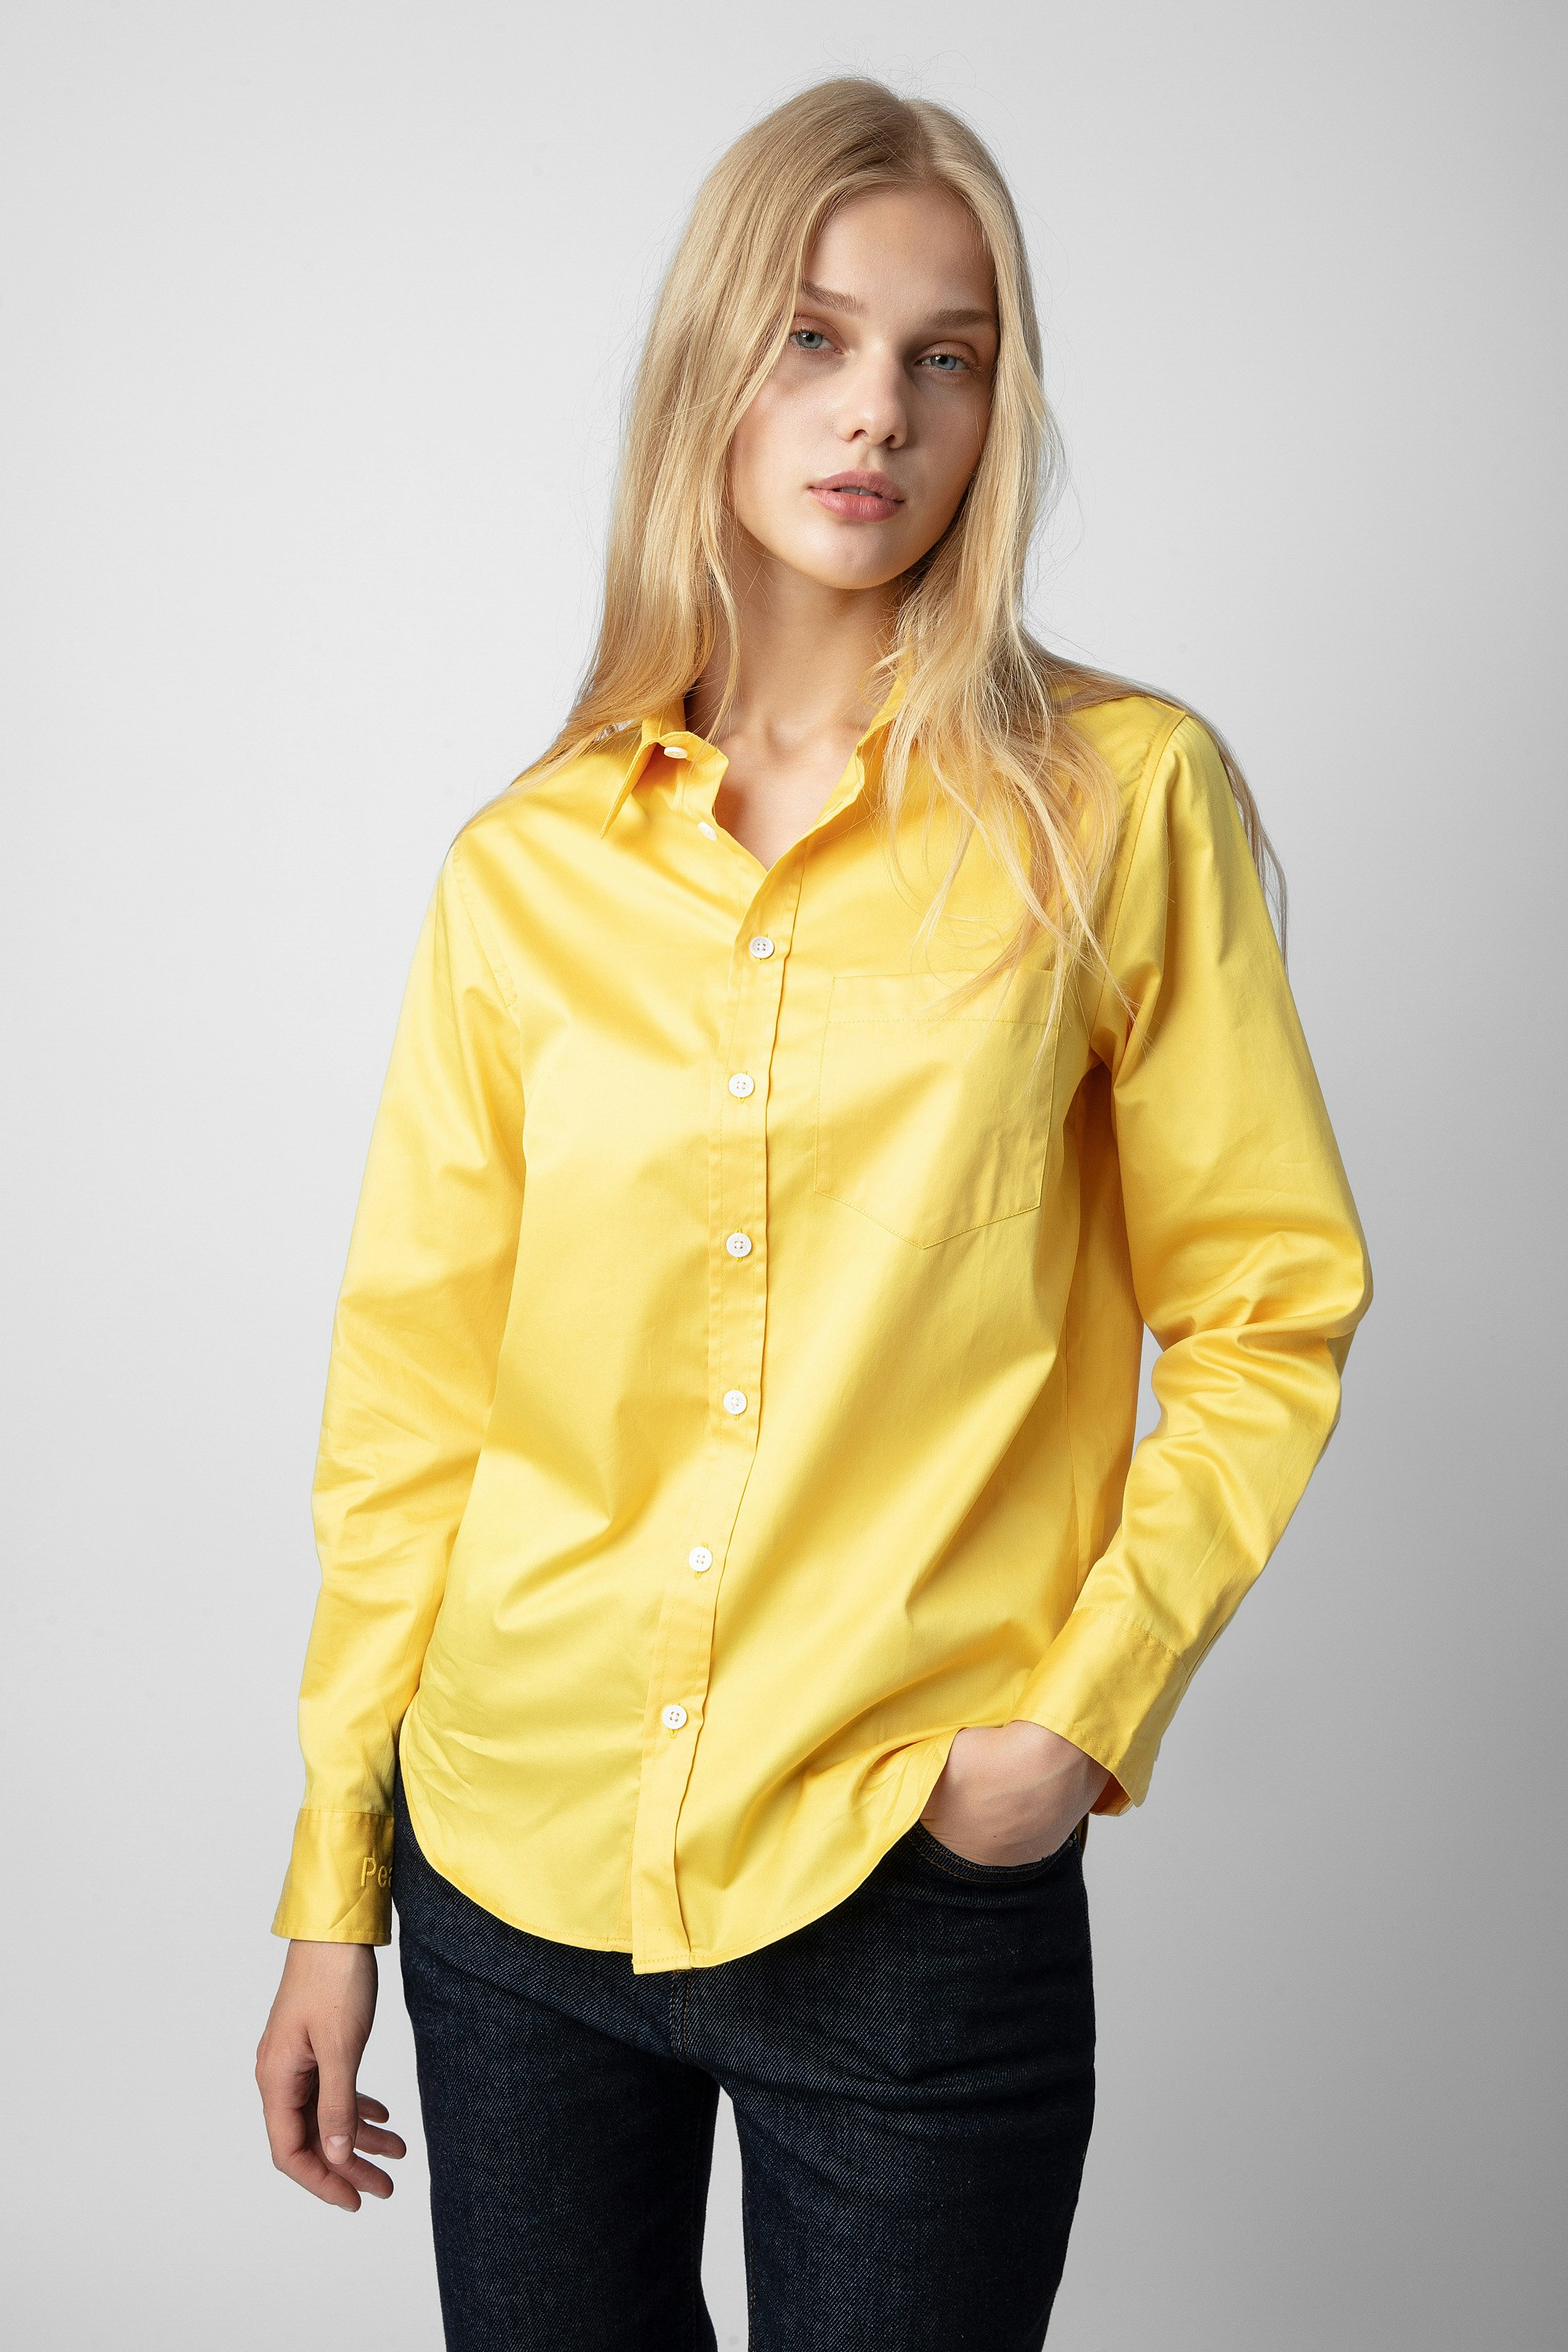 Camicia Taskiz - Camicia gialla da donna in cotone con ricamo "Peace" sulla manica sinistra.